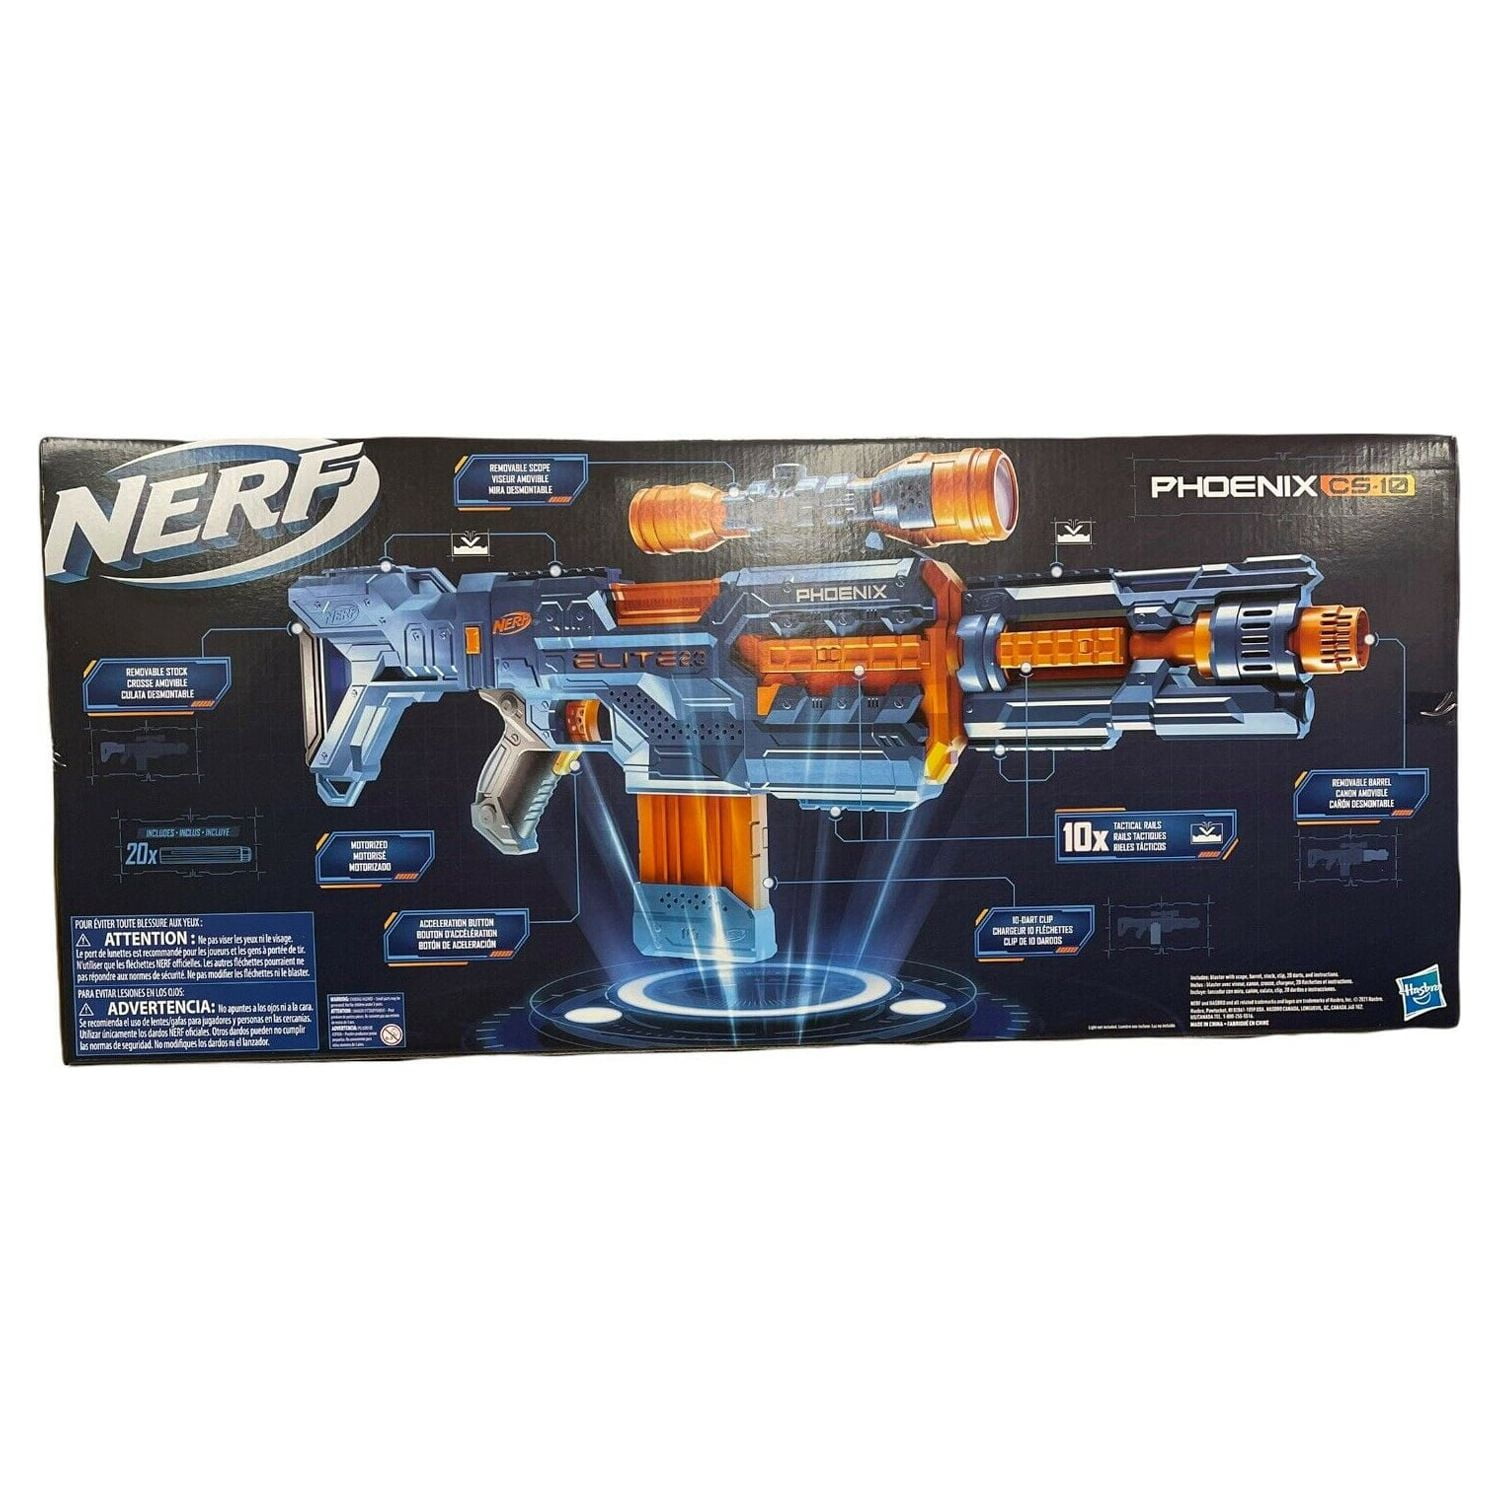 Nerf Elite 2.0 Phoenix CS-10